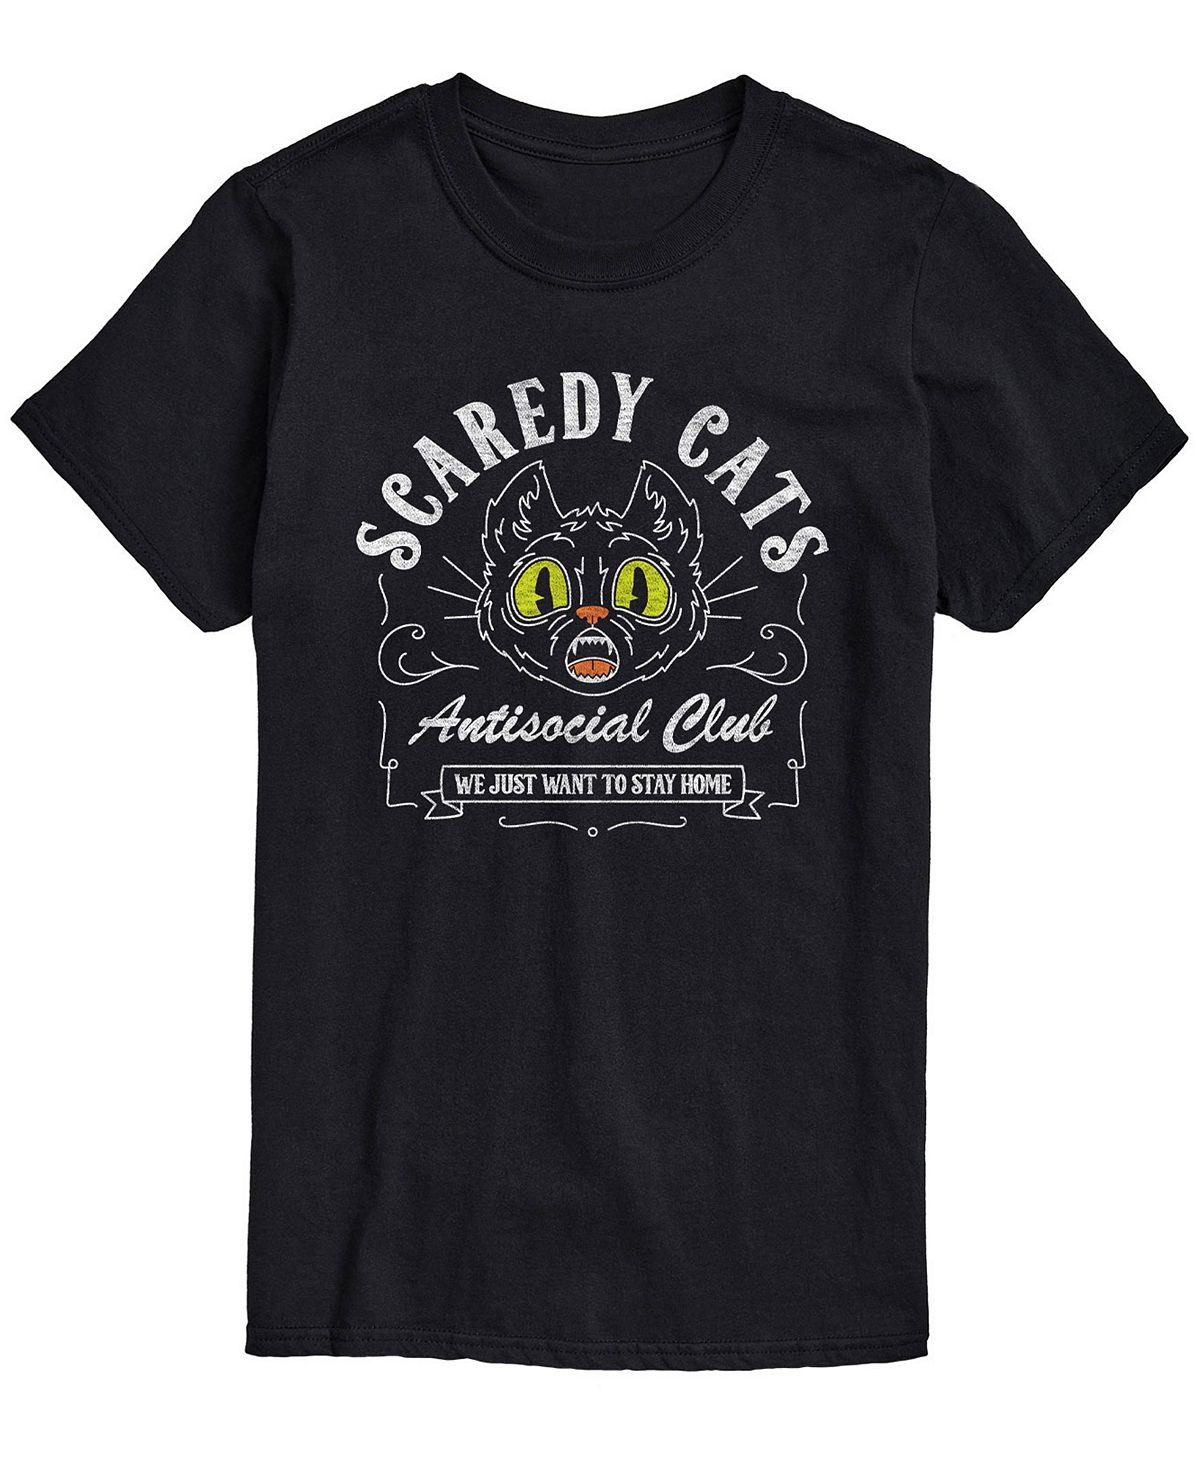 цена Мужская футболка классического кроя Scaredy Cats AIRWAVES